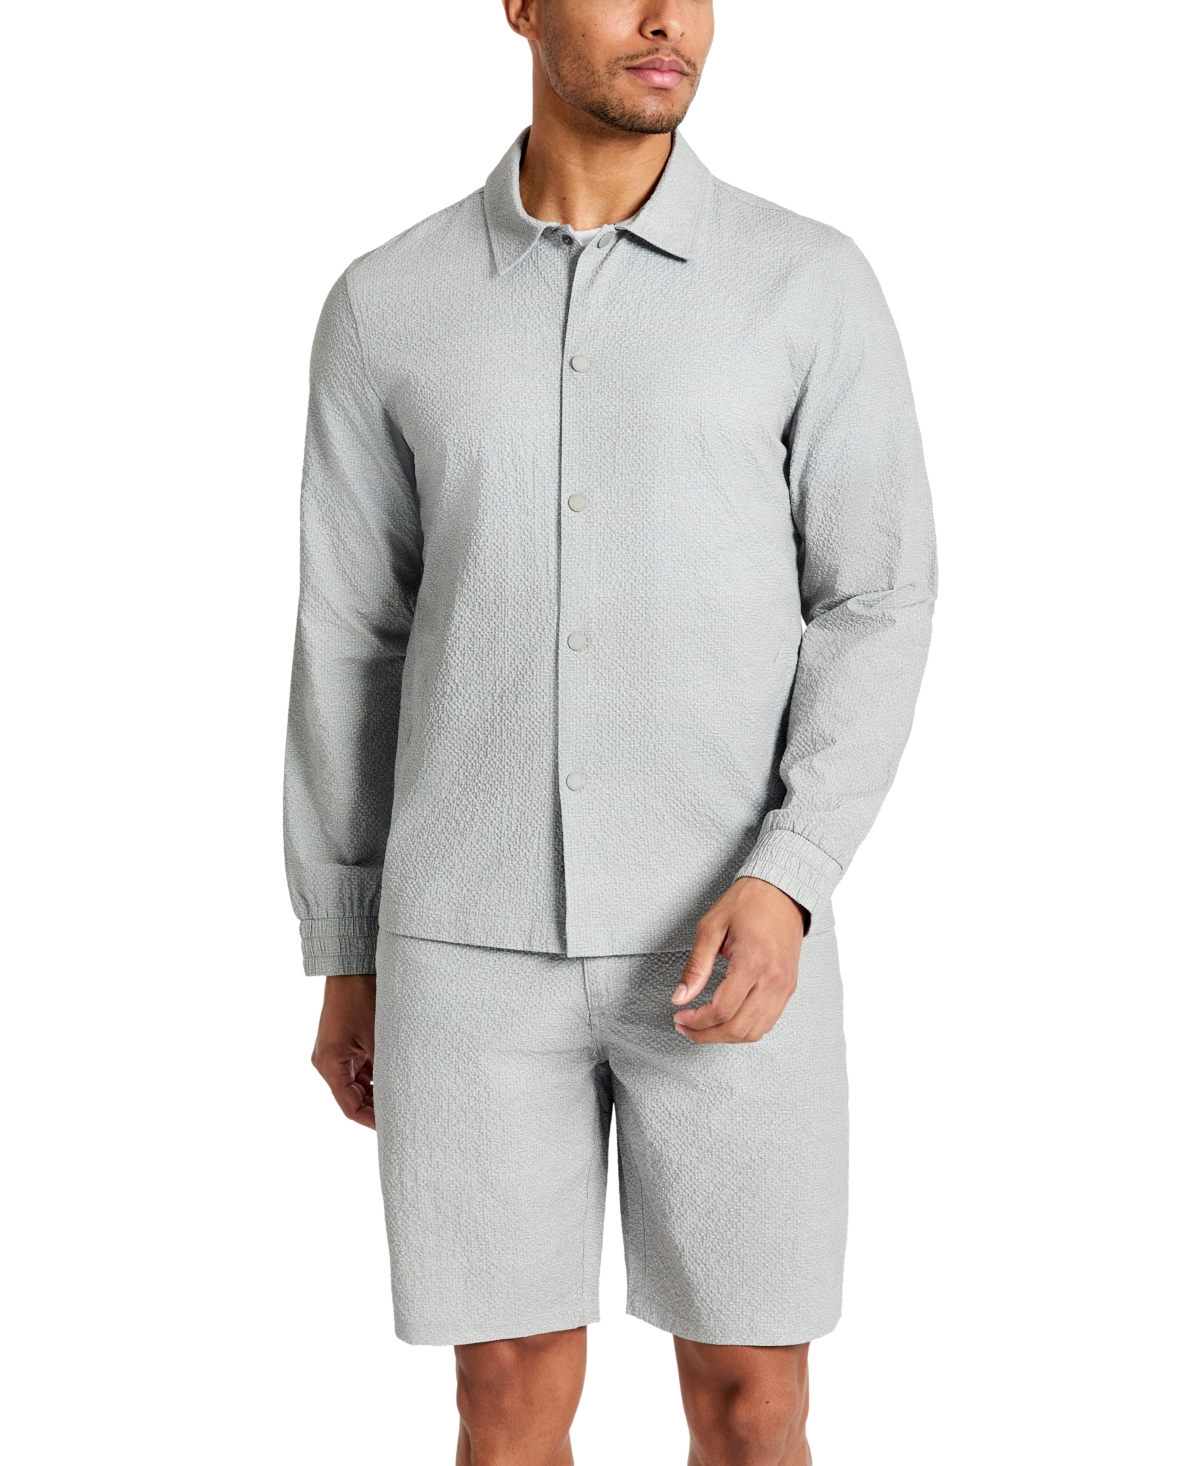 Men's 4-Way Stretch Water-Resistant Printed Seersucker Shirt Jacket - Grey